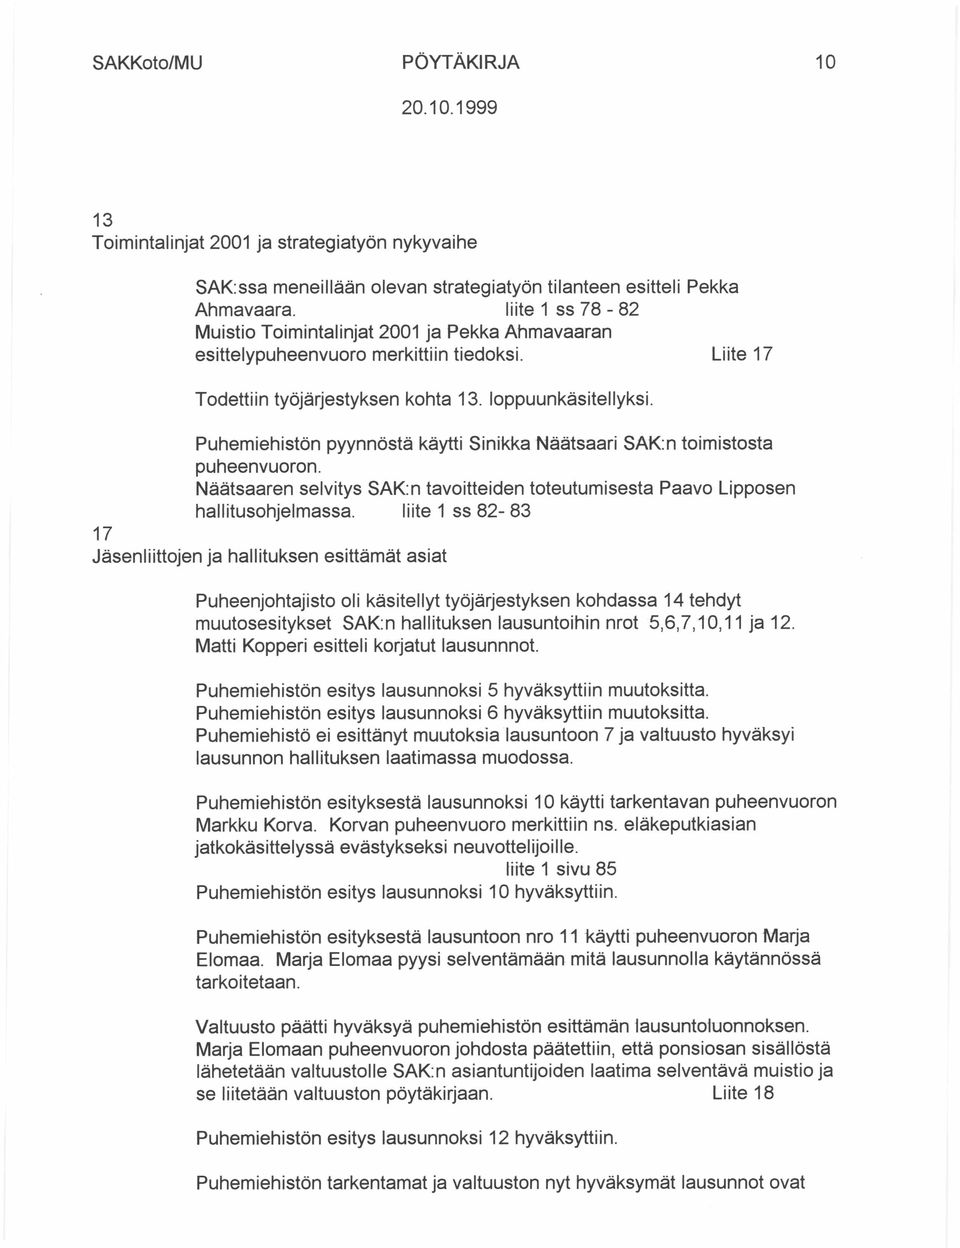 Puhemiehistön pyynnöstä käytti Sinikka Näätsaari SAK:n toimistosta puheenvuoron. Näätsaaren selvitys SAK: n tavoitteiden toteutumisesta Paavo Lipposen hallitusohjelmassa.